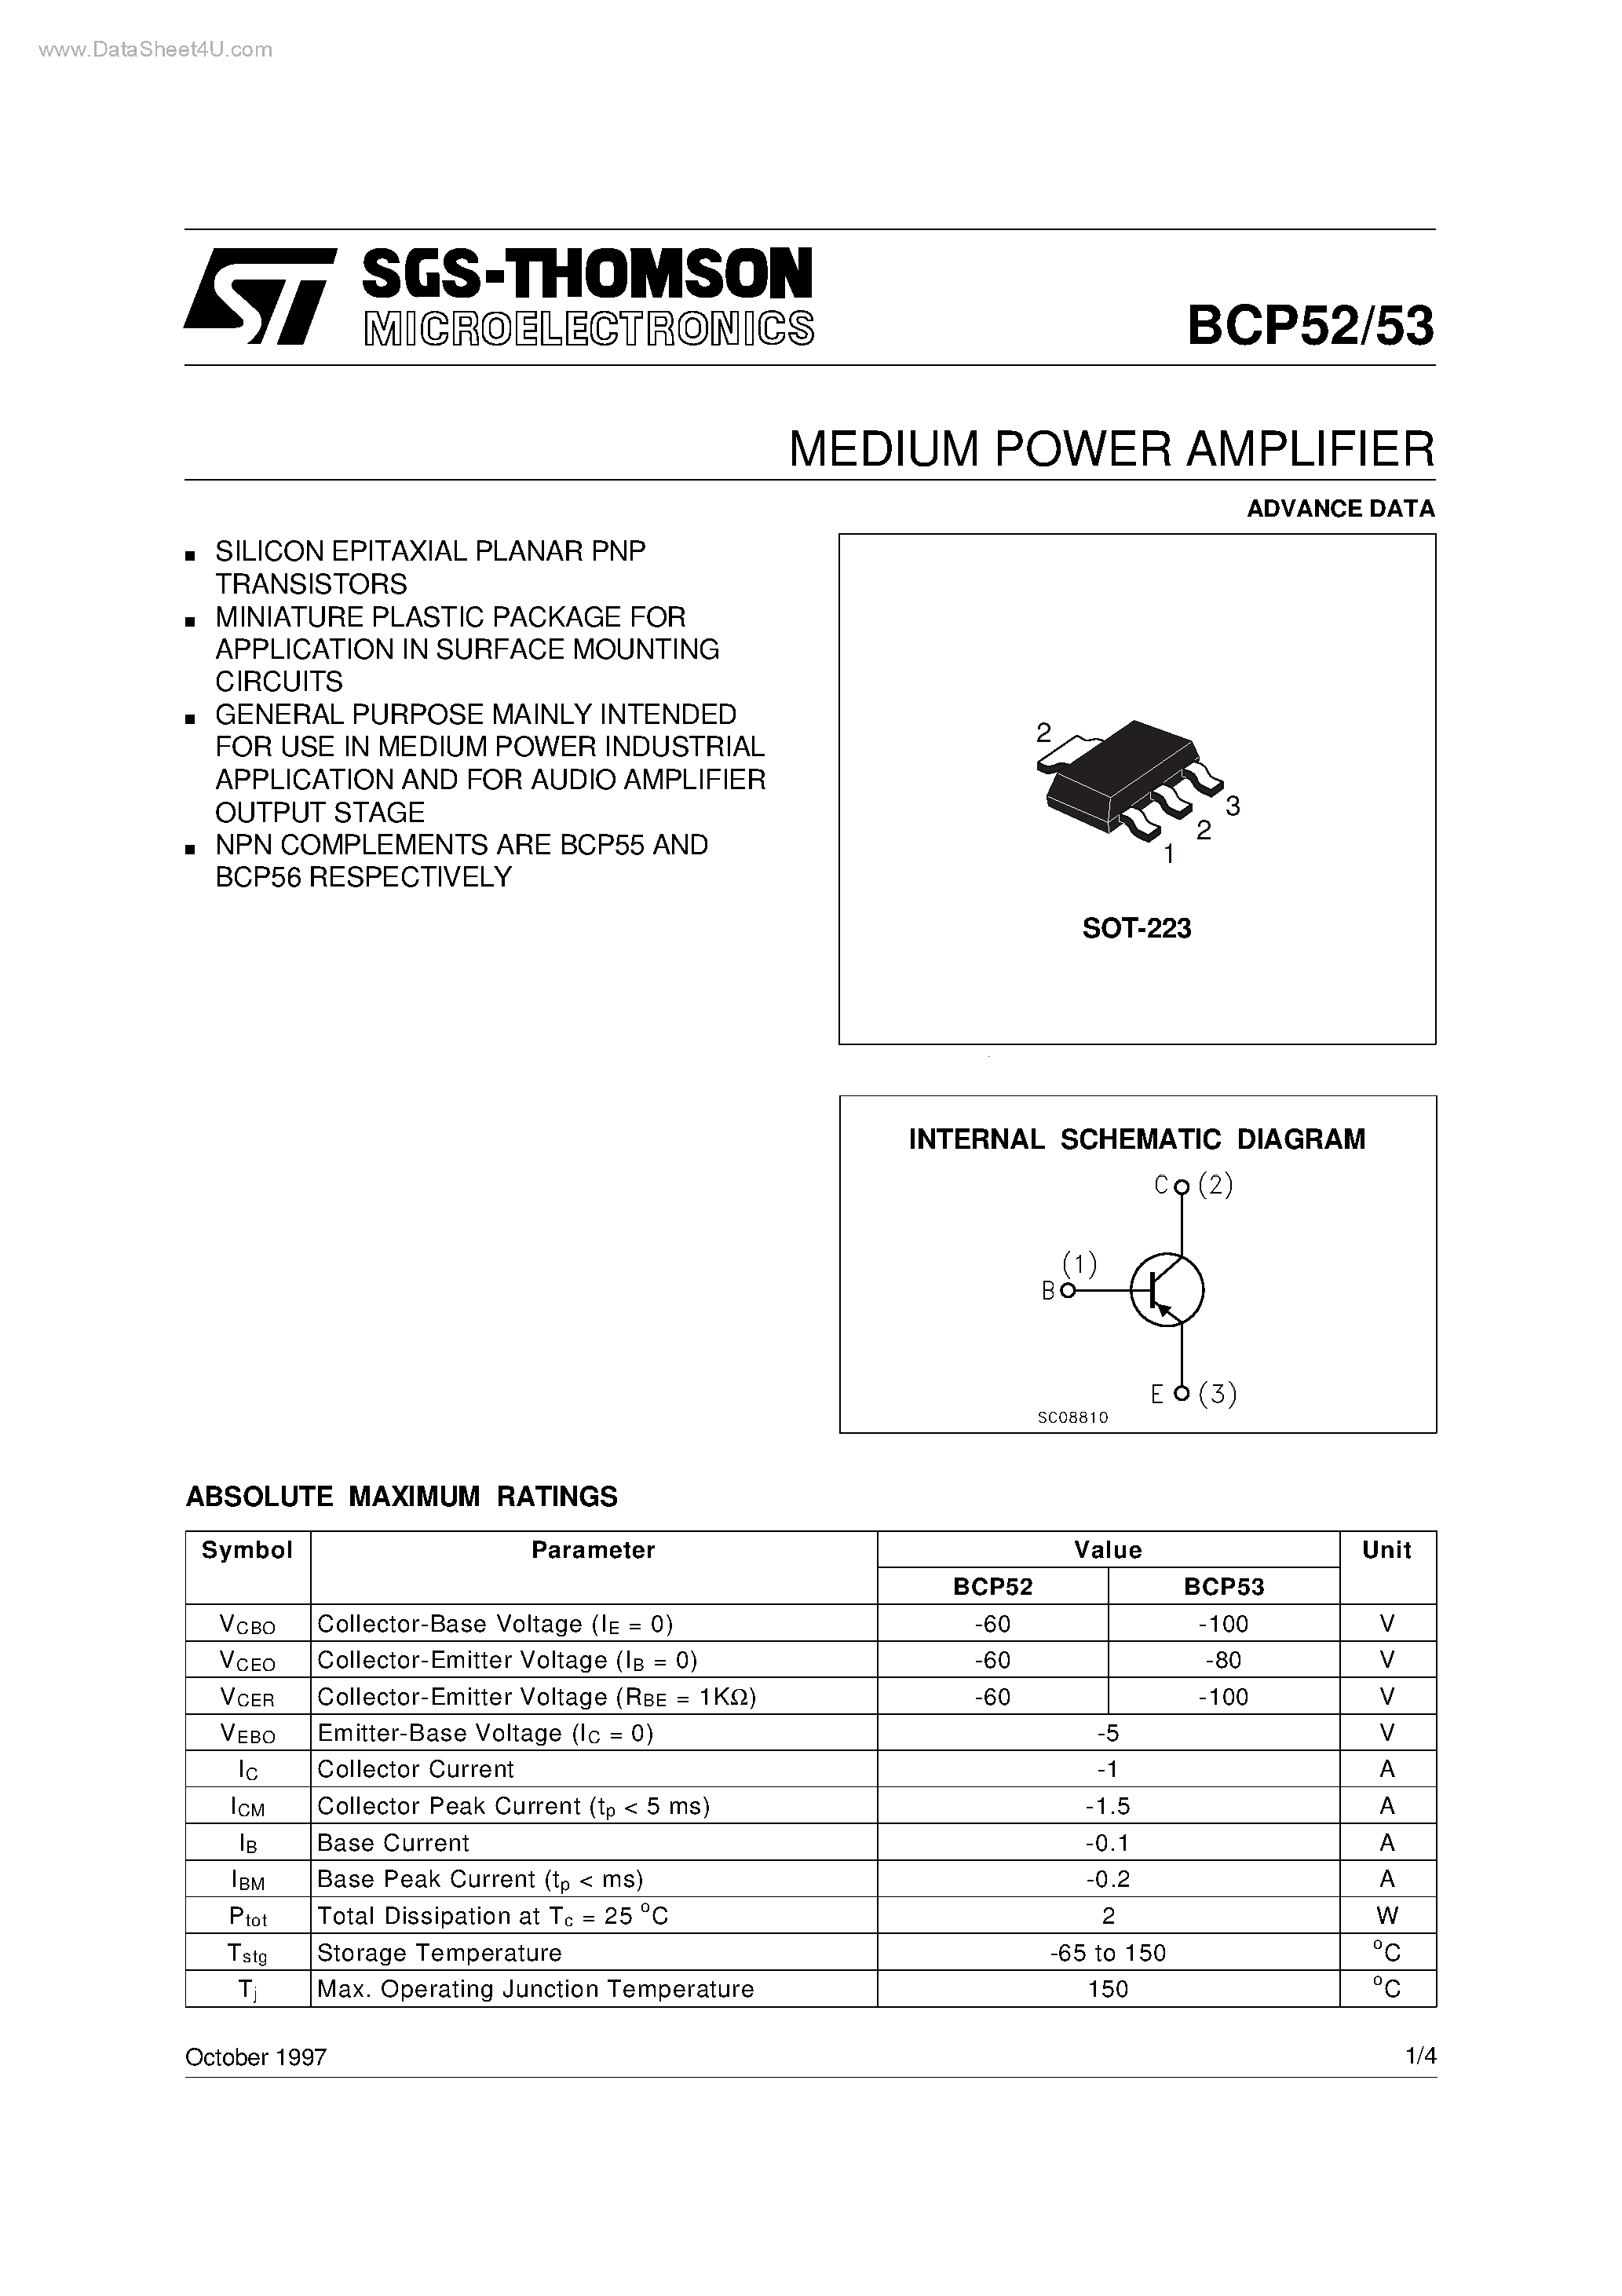 Даташит BCP52 - MEDIUM POWER AMPLIFIER страница 1